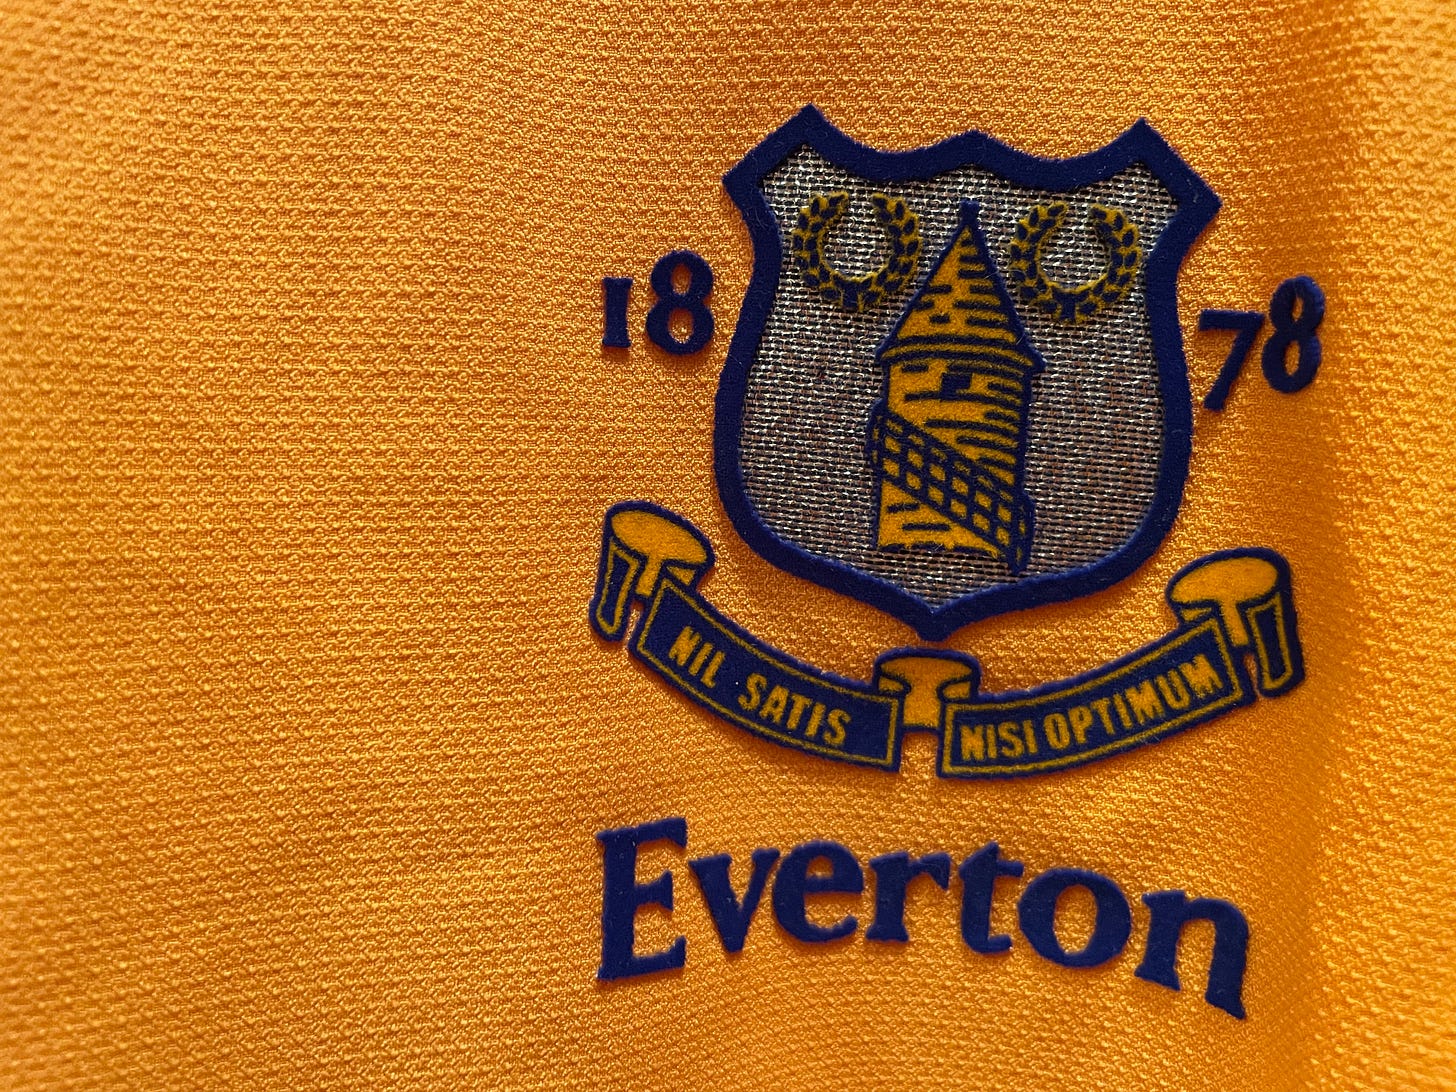 Everton FC crest: "Nil satis nisi optimum"